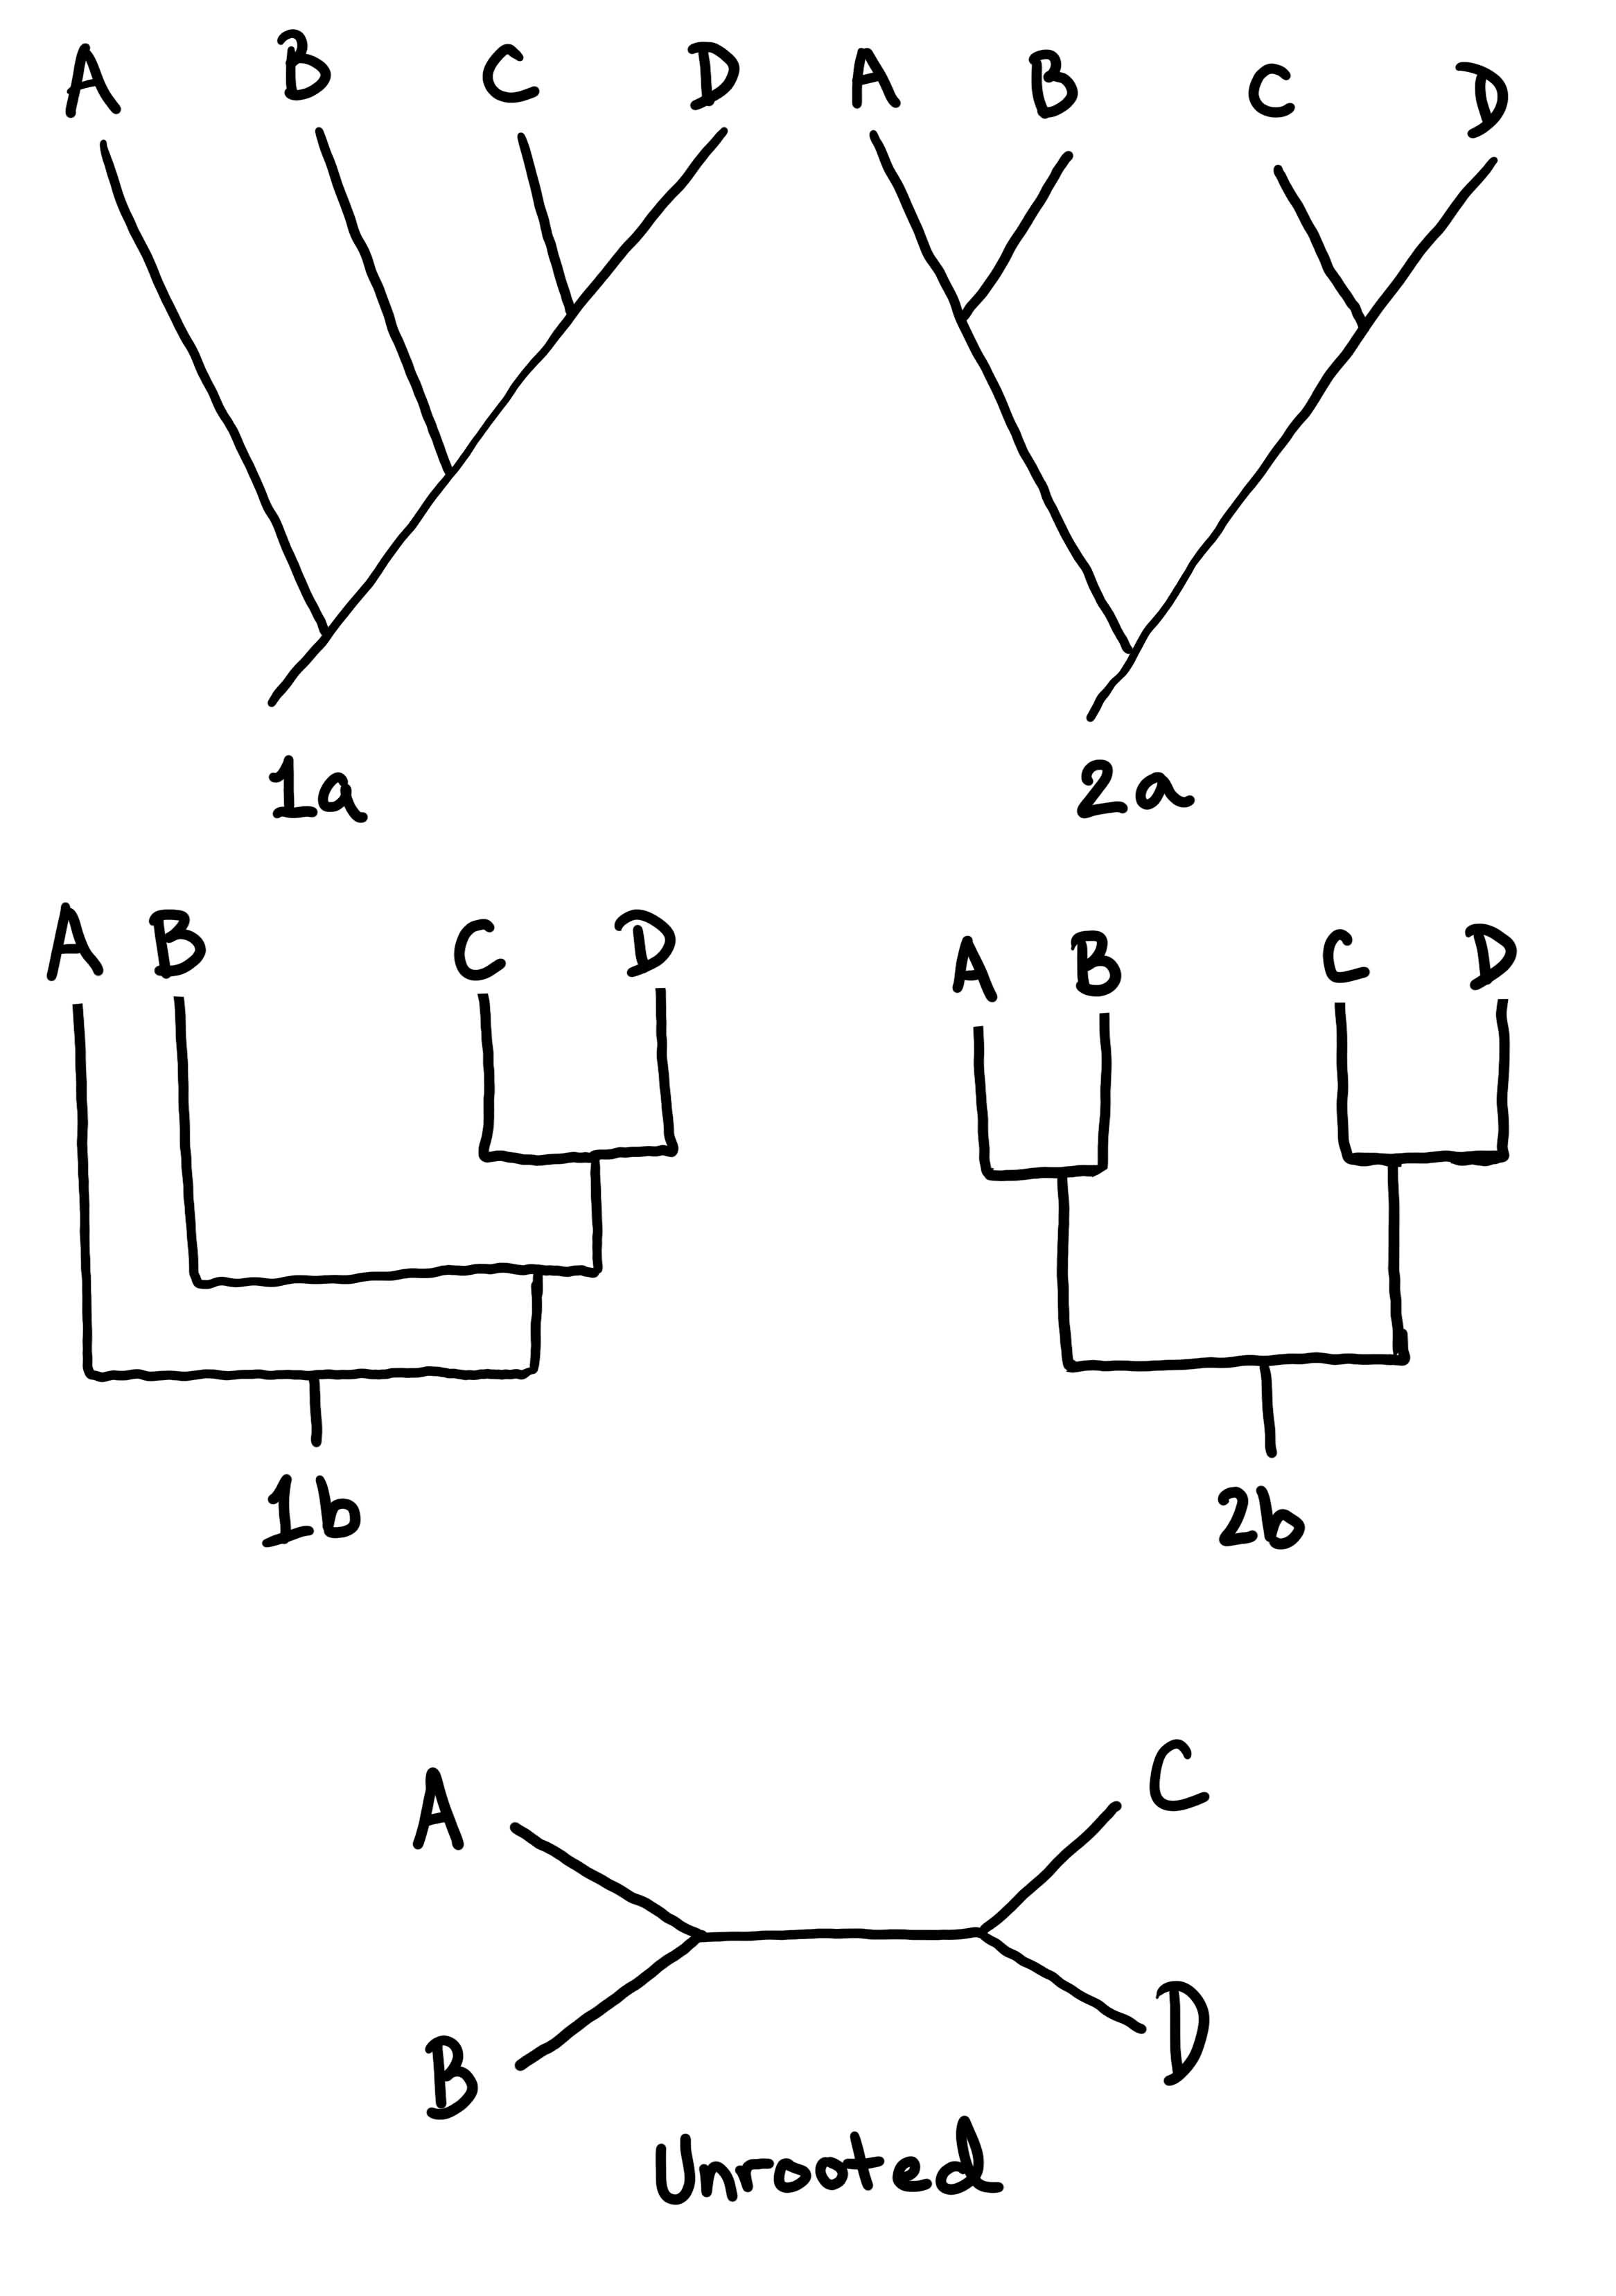 5 diagramas de ramificación de ejemplo que comunican las relaciones entre 4 organismos o grupos diferentes (A, B, C y D).